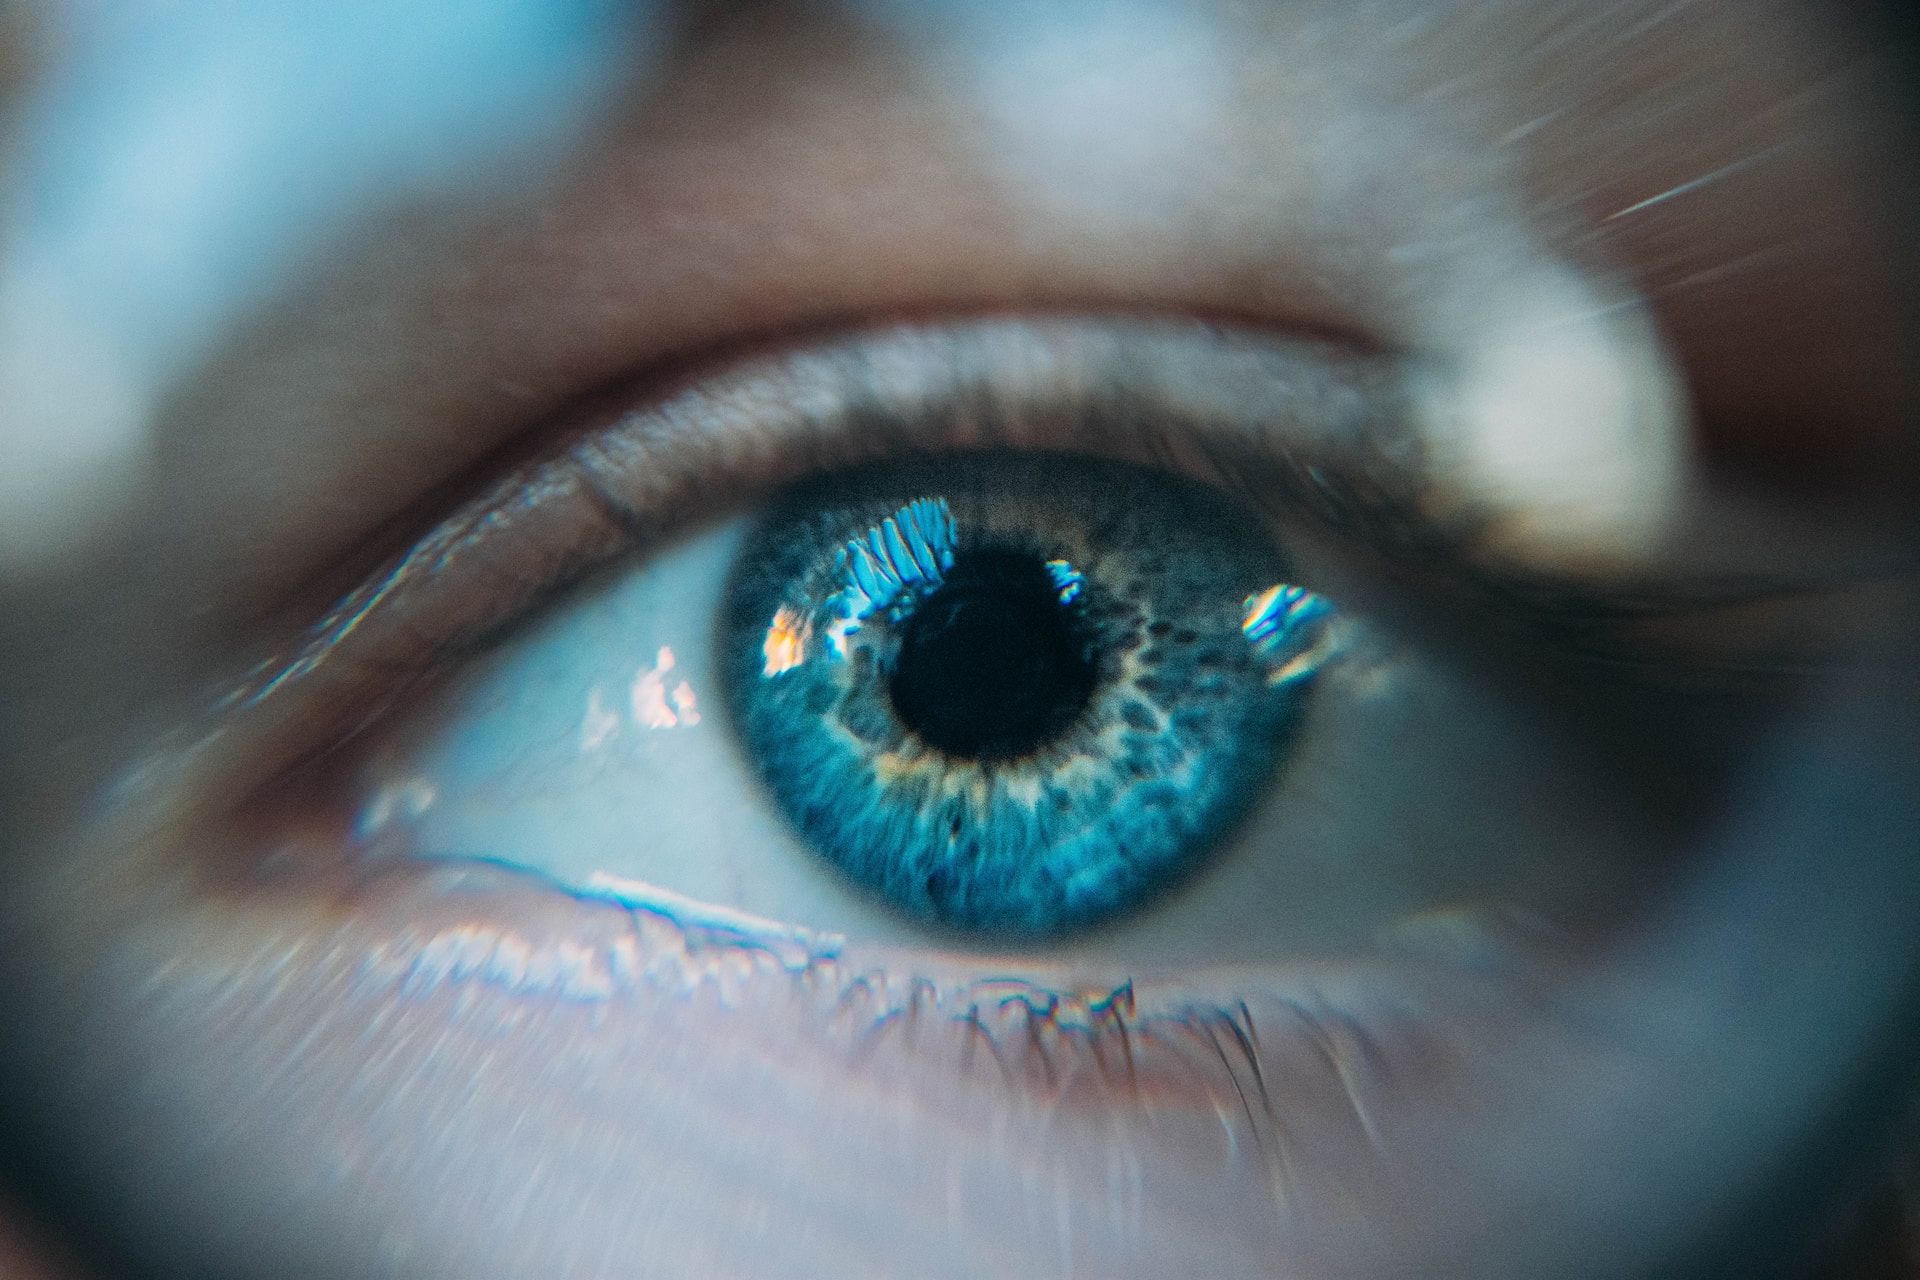 Сканирование глаз позволяет выявить болезнь Паркинсона за 7 лет до первых симптомов - Здоровье 24